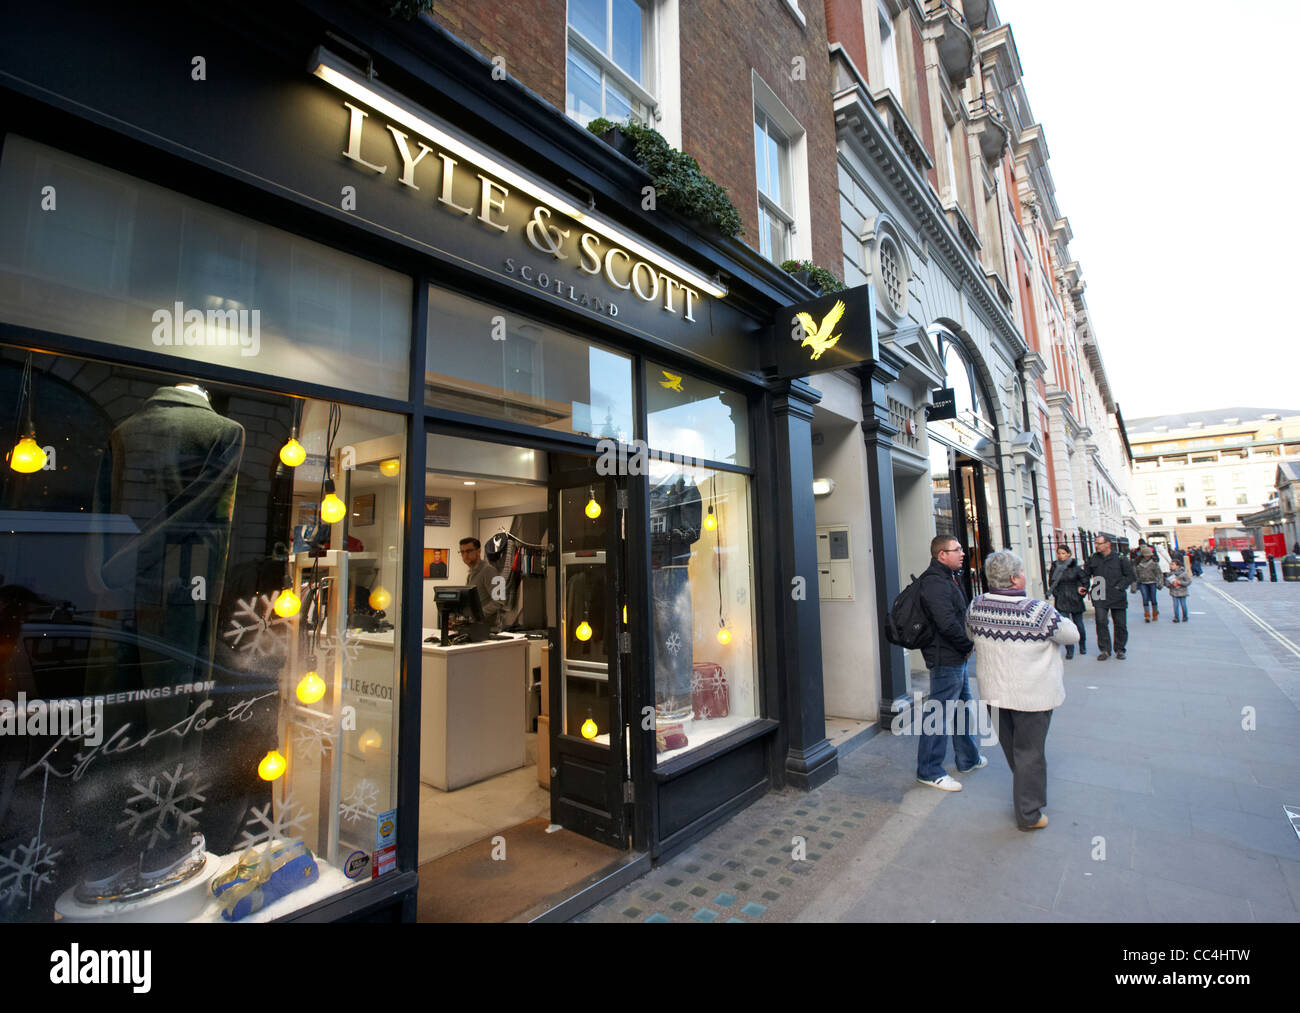 Lyle und Scott Schottland Boutique Shop Reihe Geschäfte covent garden London England UK-Vereinigtes Königreich Stockfoto